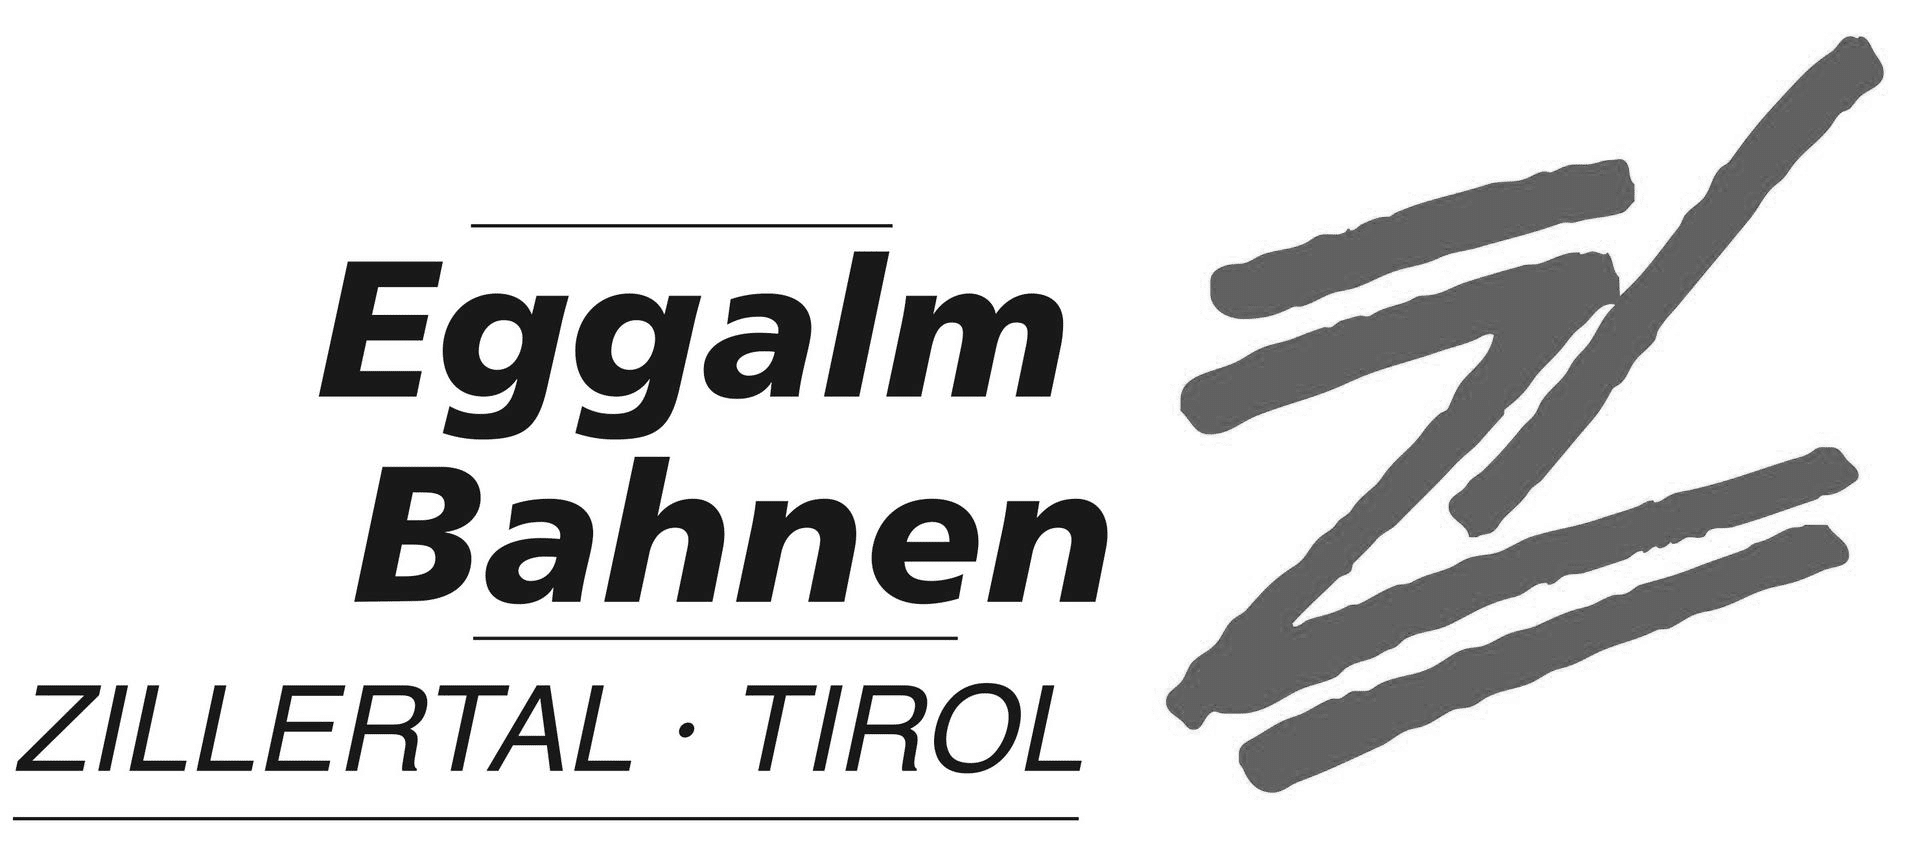 Eggalm Bahnen Logo grau